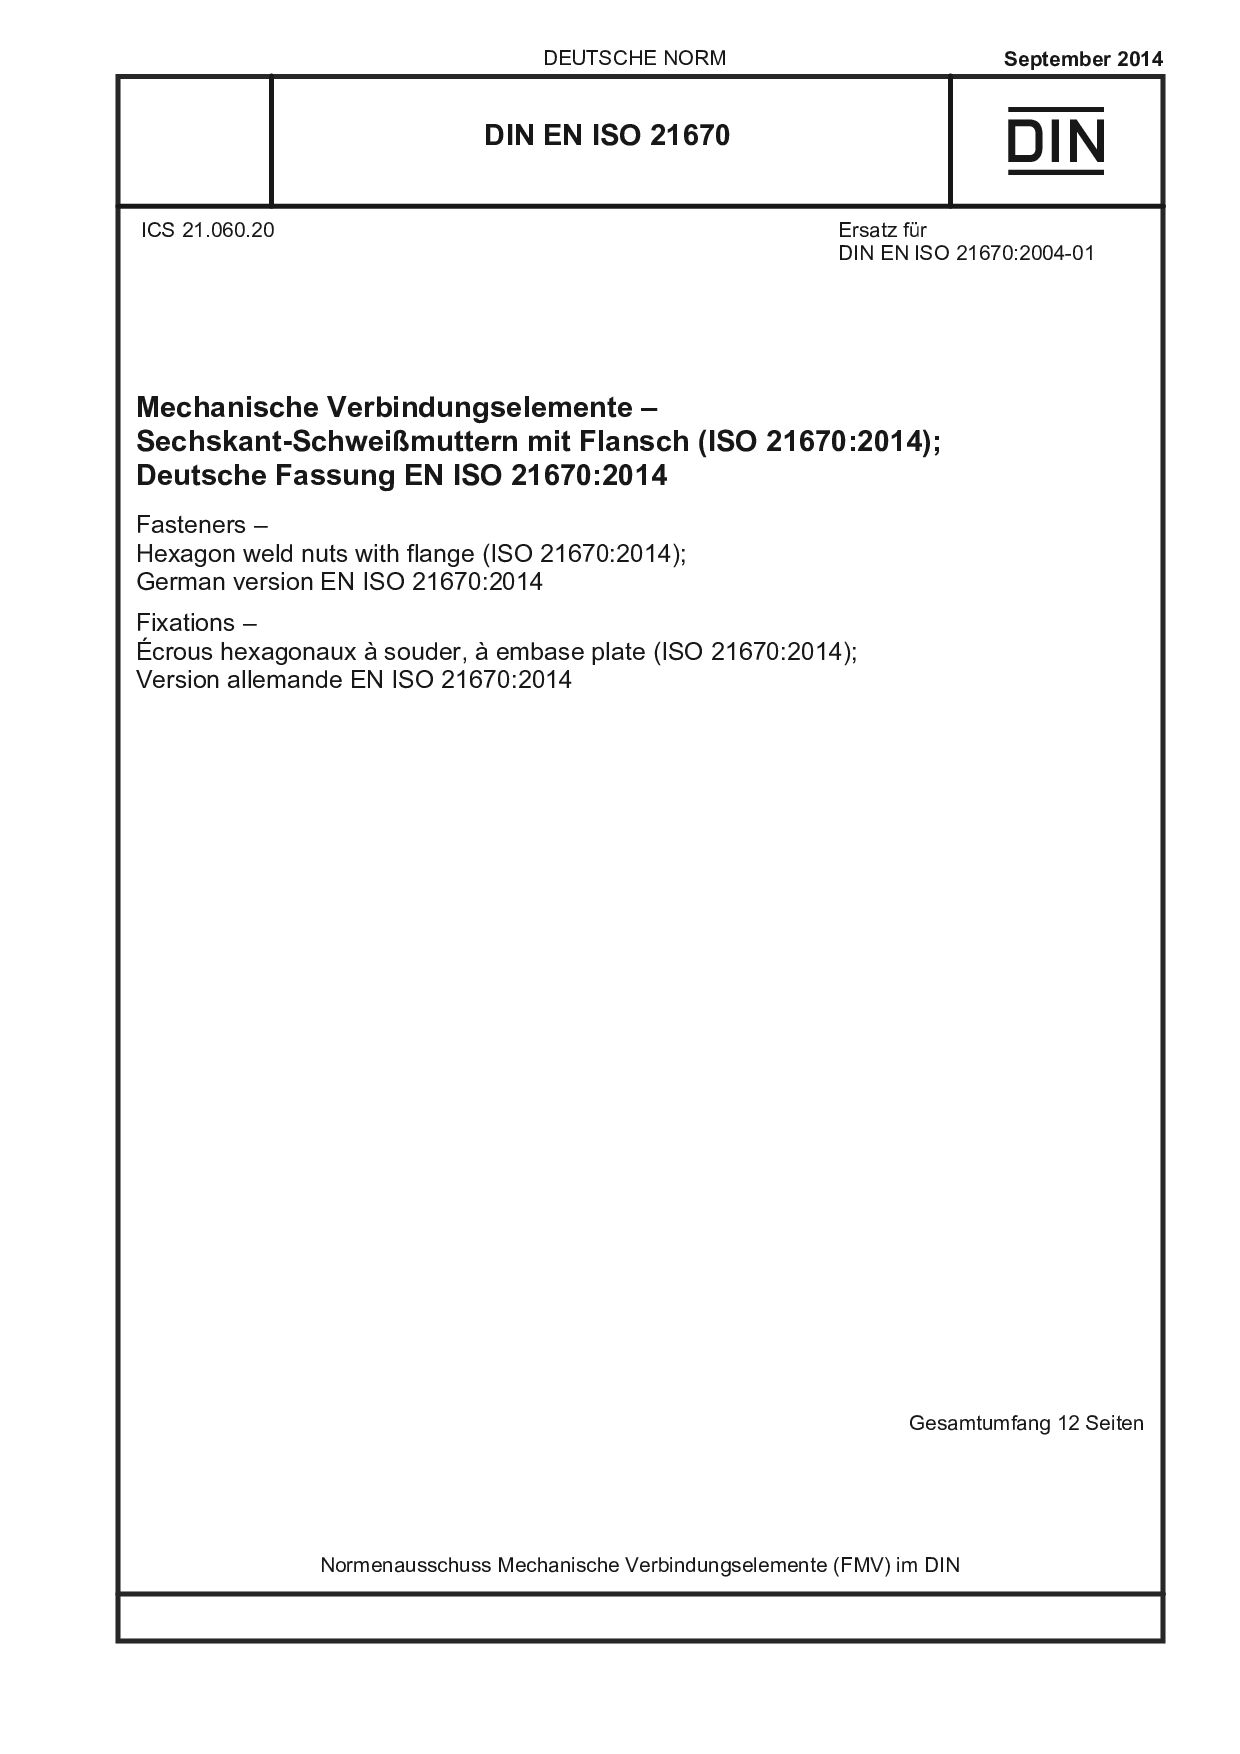 DIN EN ISO 21670:2014封面图